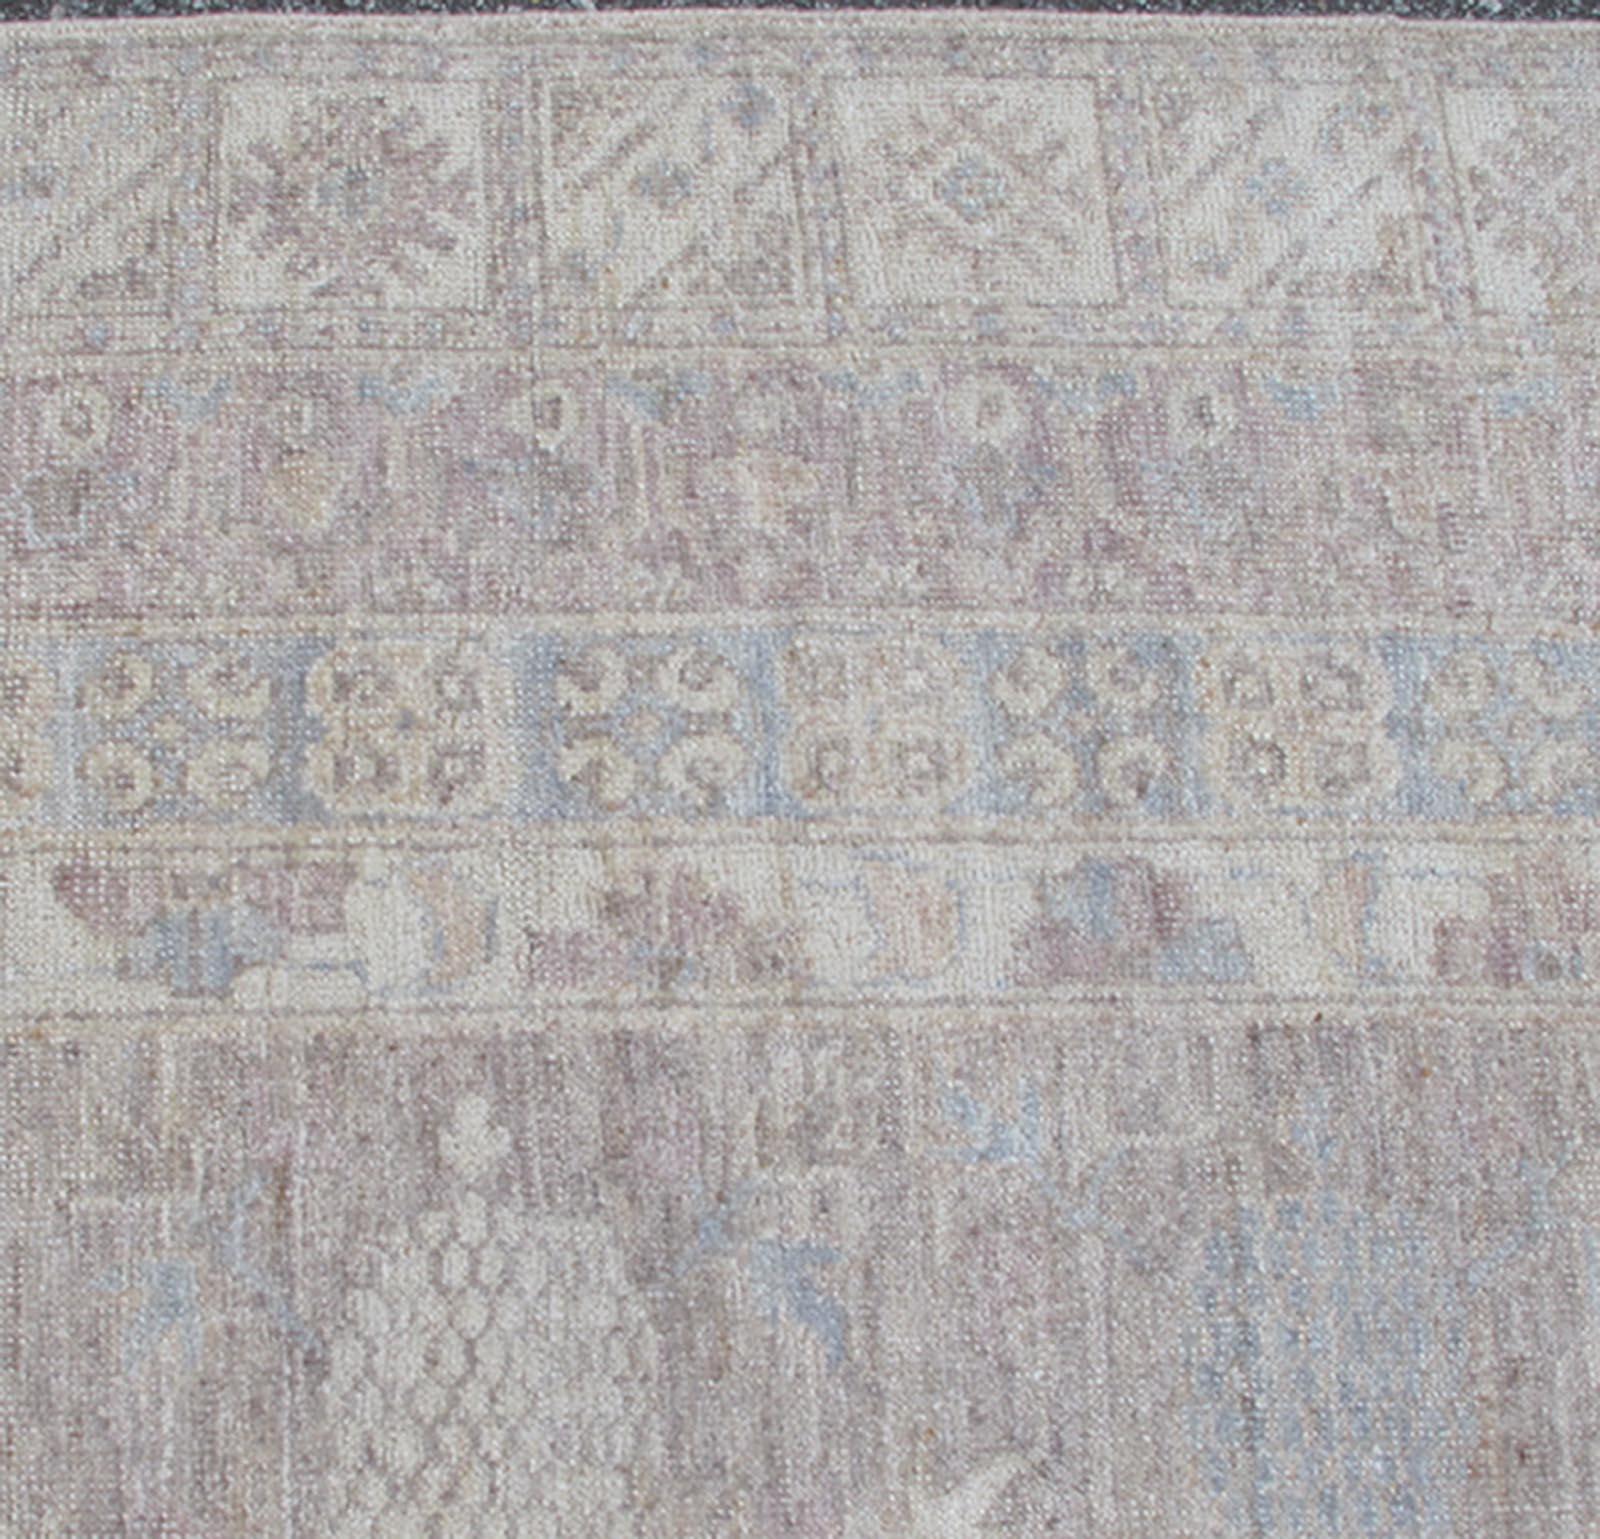 Dieser Khotan zeigt ein Allover-Muster, das von einem sich wiederholenden Muster in der Bordüre flankiert wird. Das gesamte Stück ist in hellen Tönen gehalten, was es zu einem vielseitigen Teppich macht, der sich gut für eine Vielzahl von